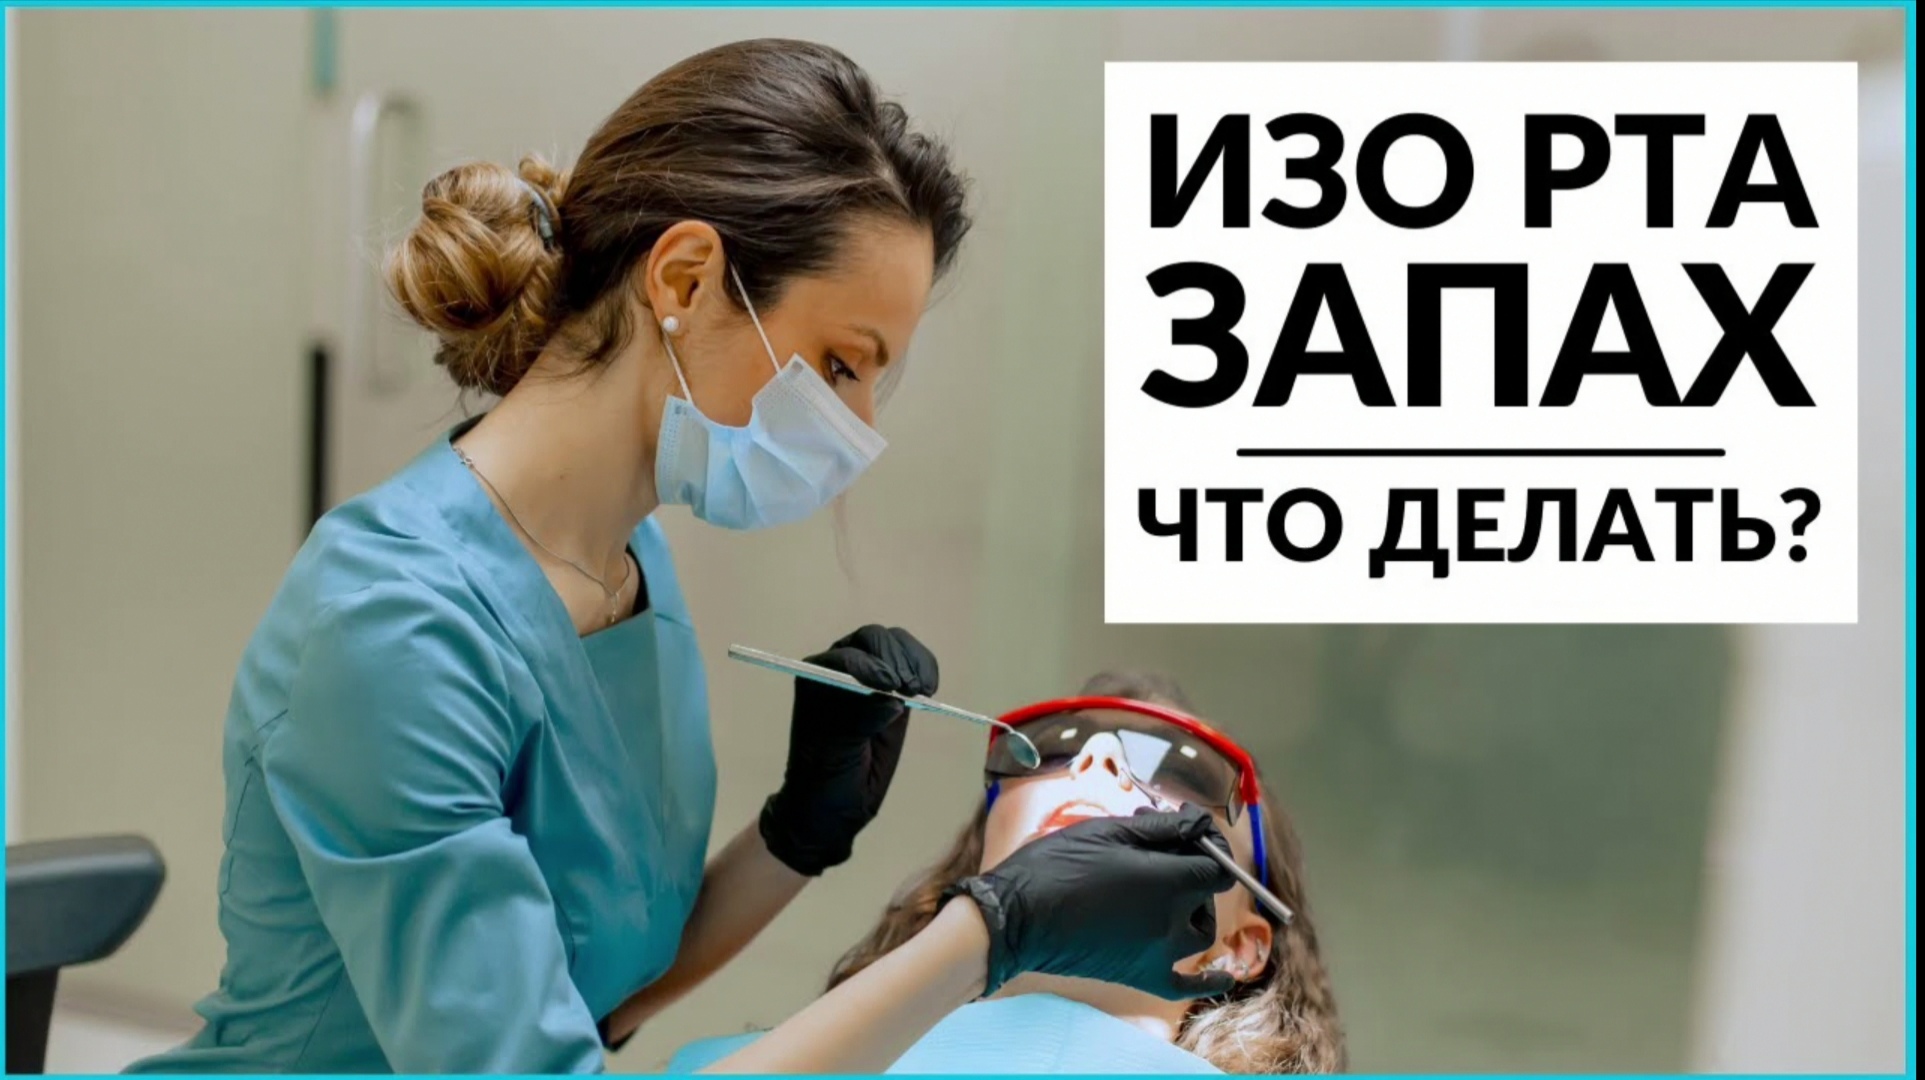 Российский стоматолог. Полезные советы от стоматолога.